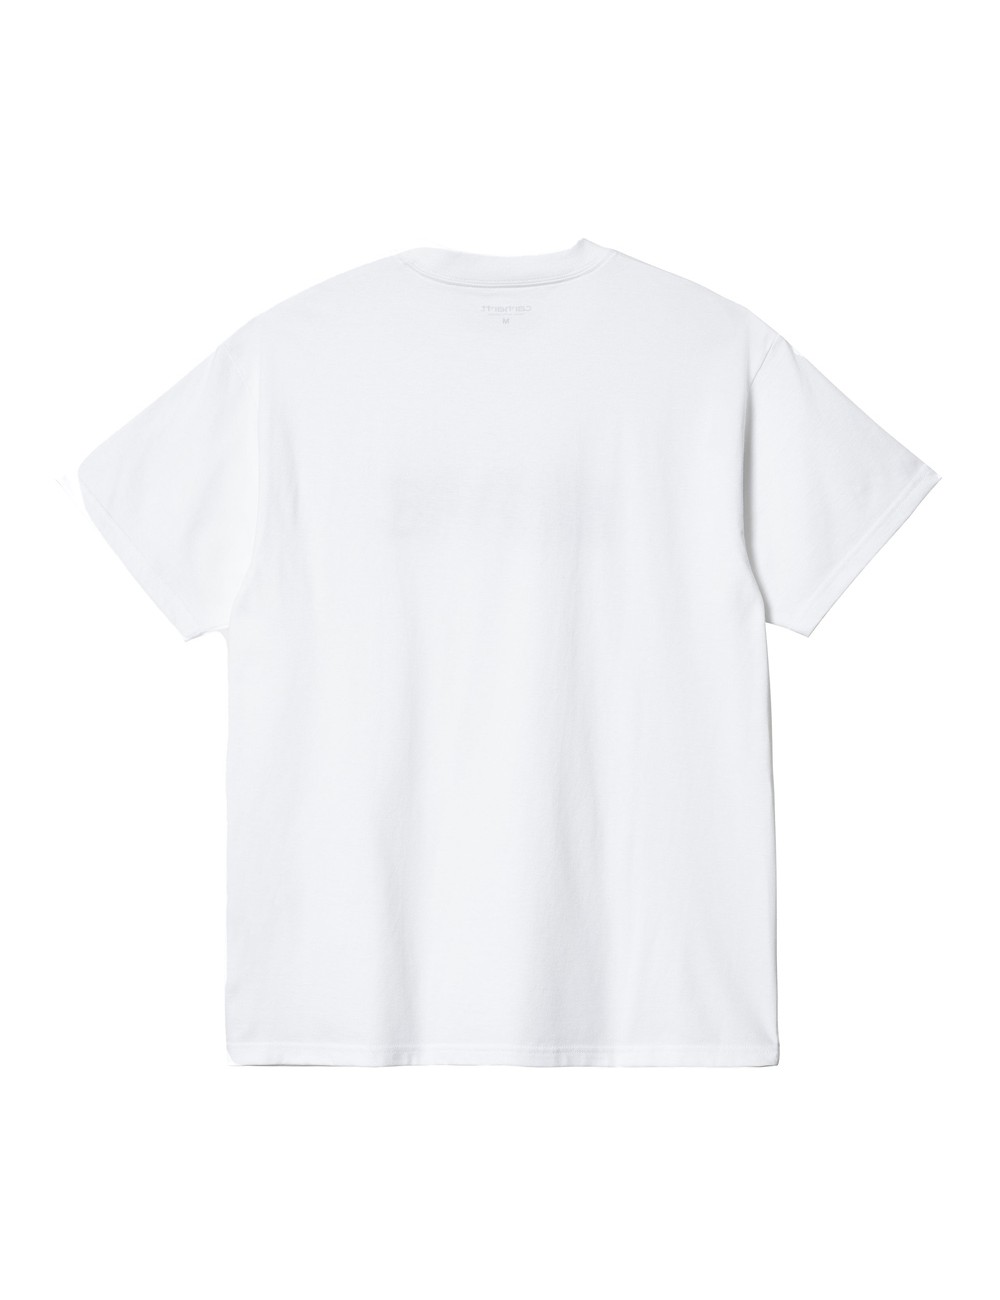 Carhartt WIP S/S Love T-Shirt White I032179-02-XX